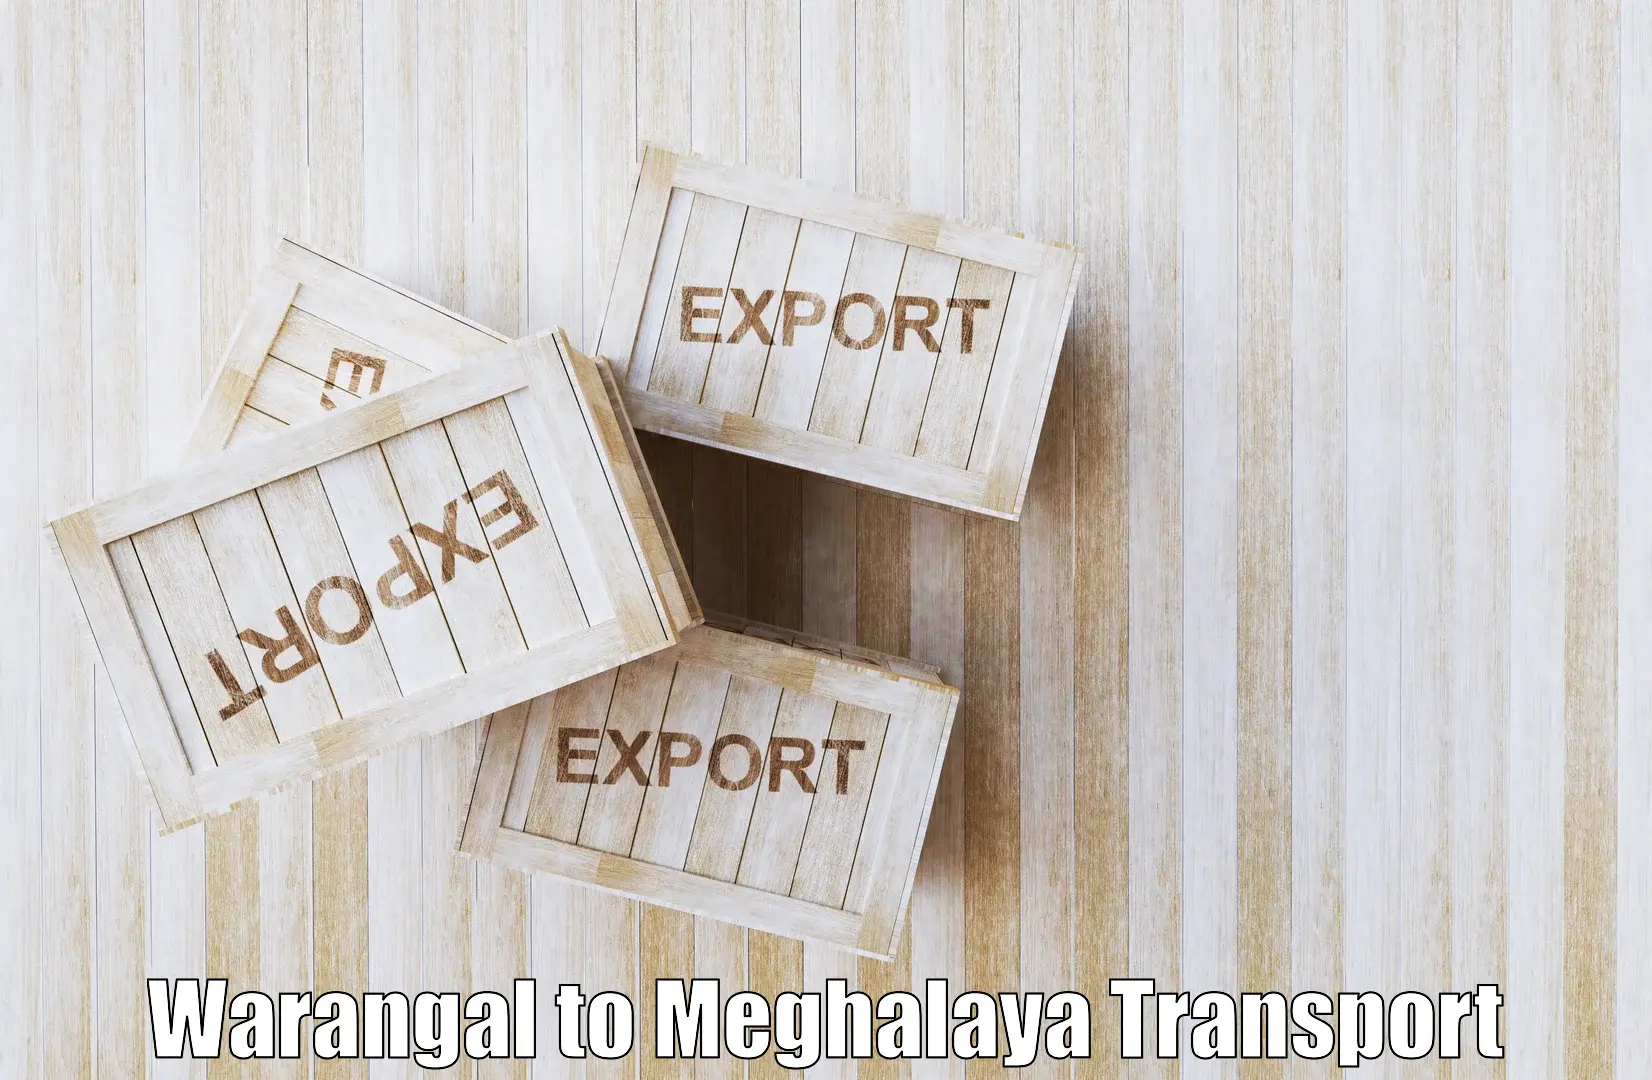 Transport shared services Warangal to Garobadha